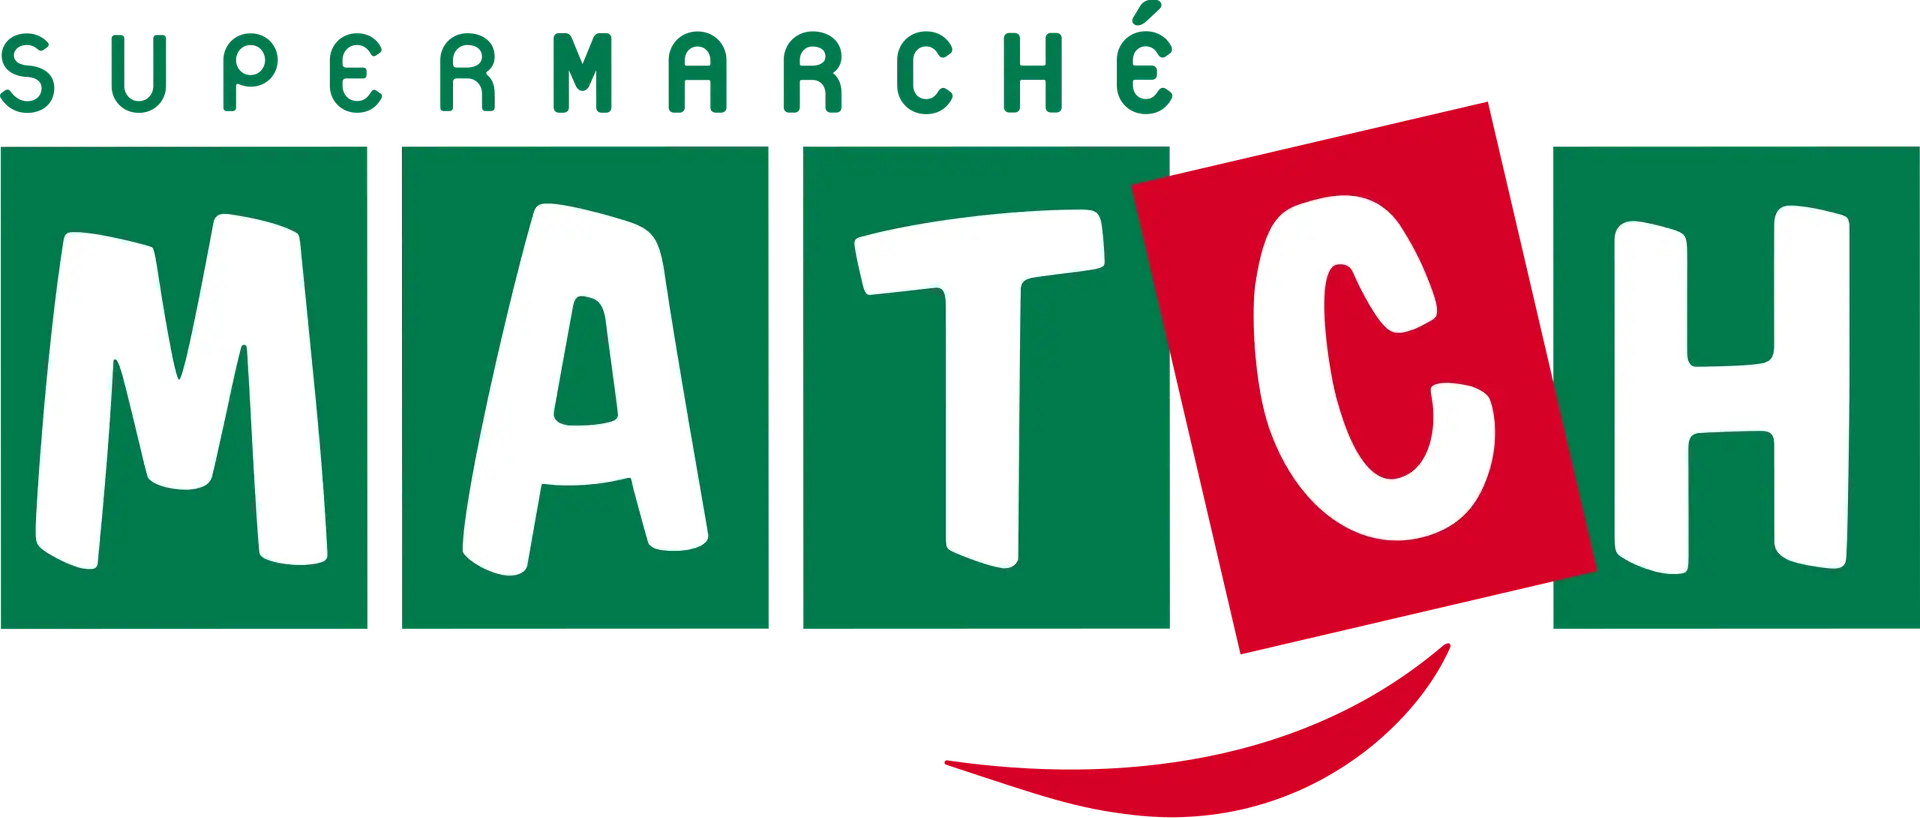 Logo du Supermarché Match avec "SUPERMARCHÉ" et "MATCH" en lettres vertes et le "C" de "MATCH" en rouge, avec une virgule stylisée en rouge sous le "T" et le "C".